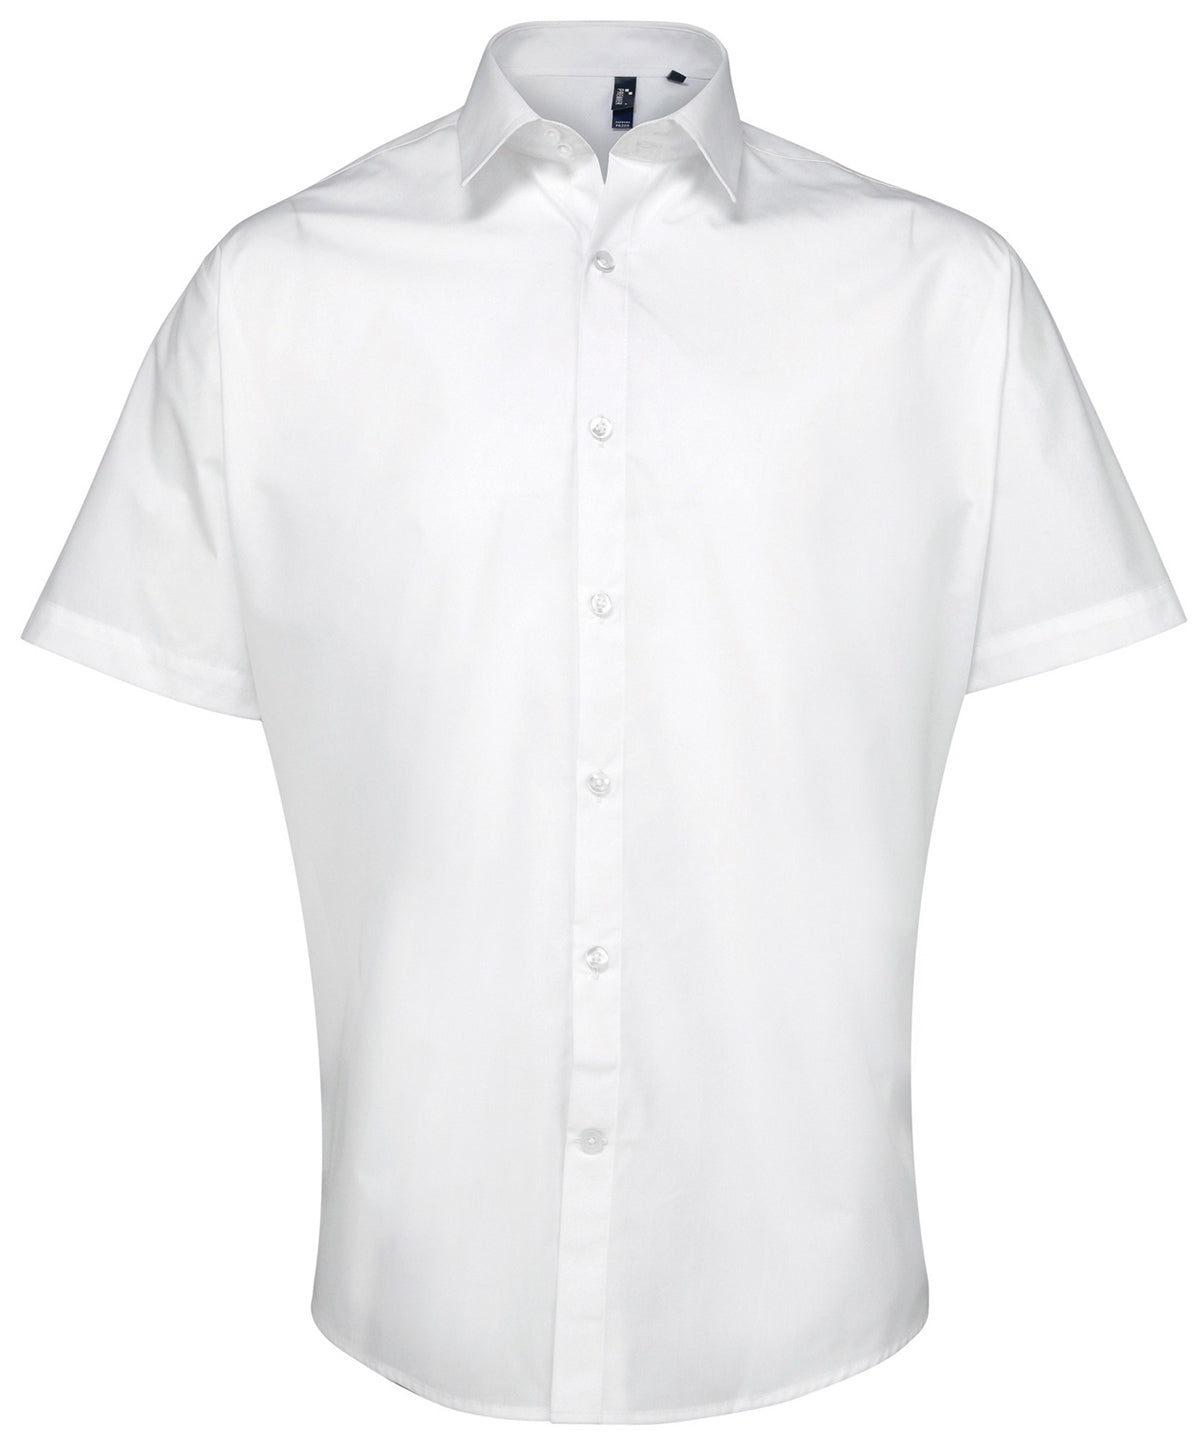 Supreme Poplin Short Sleeve Shirt